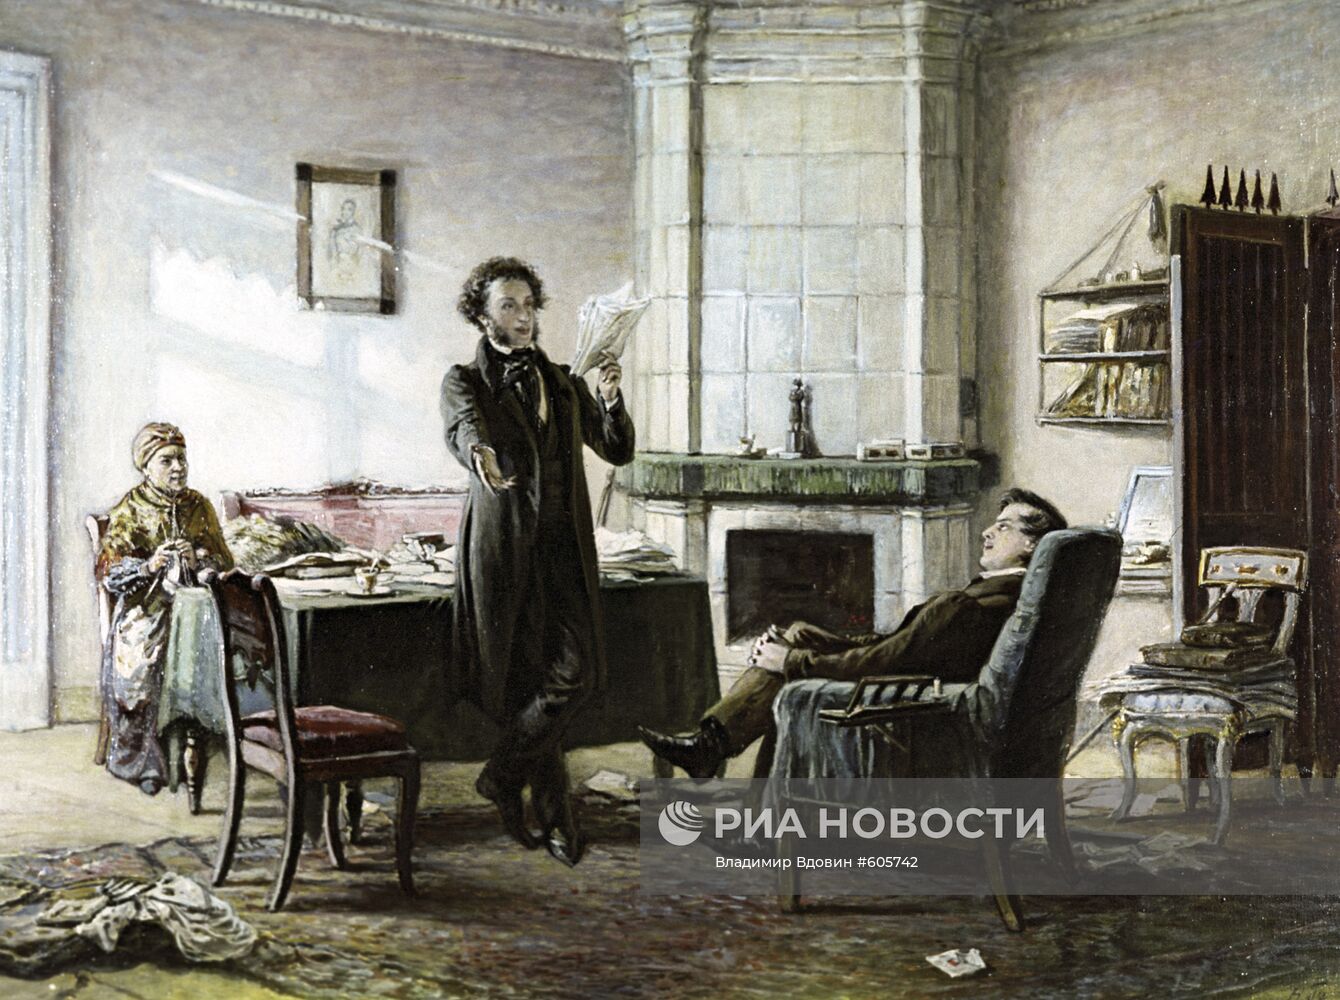 Картина Николая Ге "Пушкин в селе Михайловском"